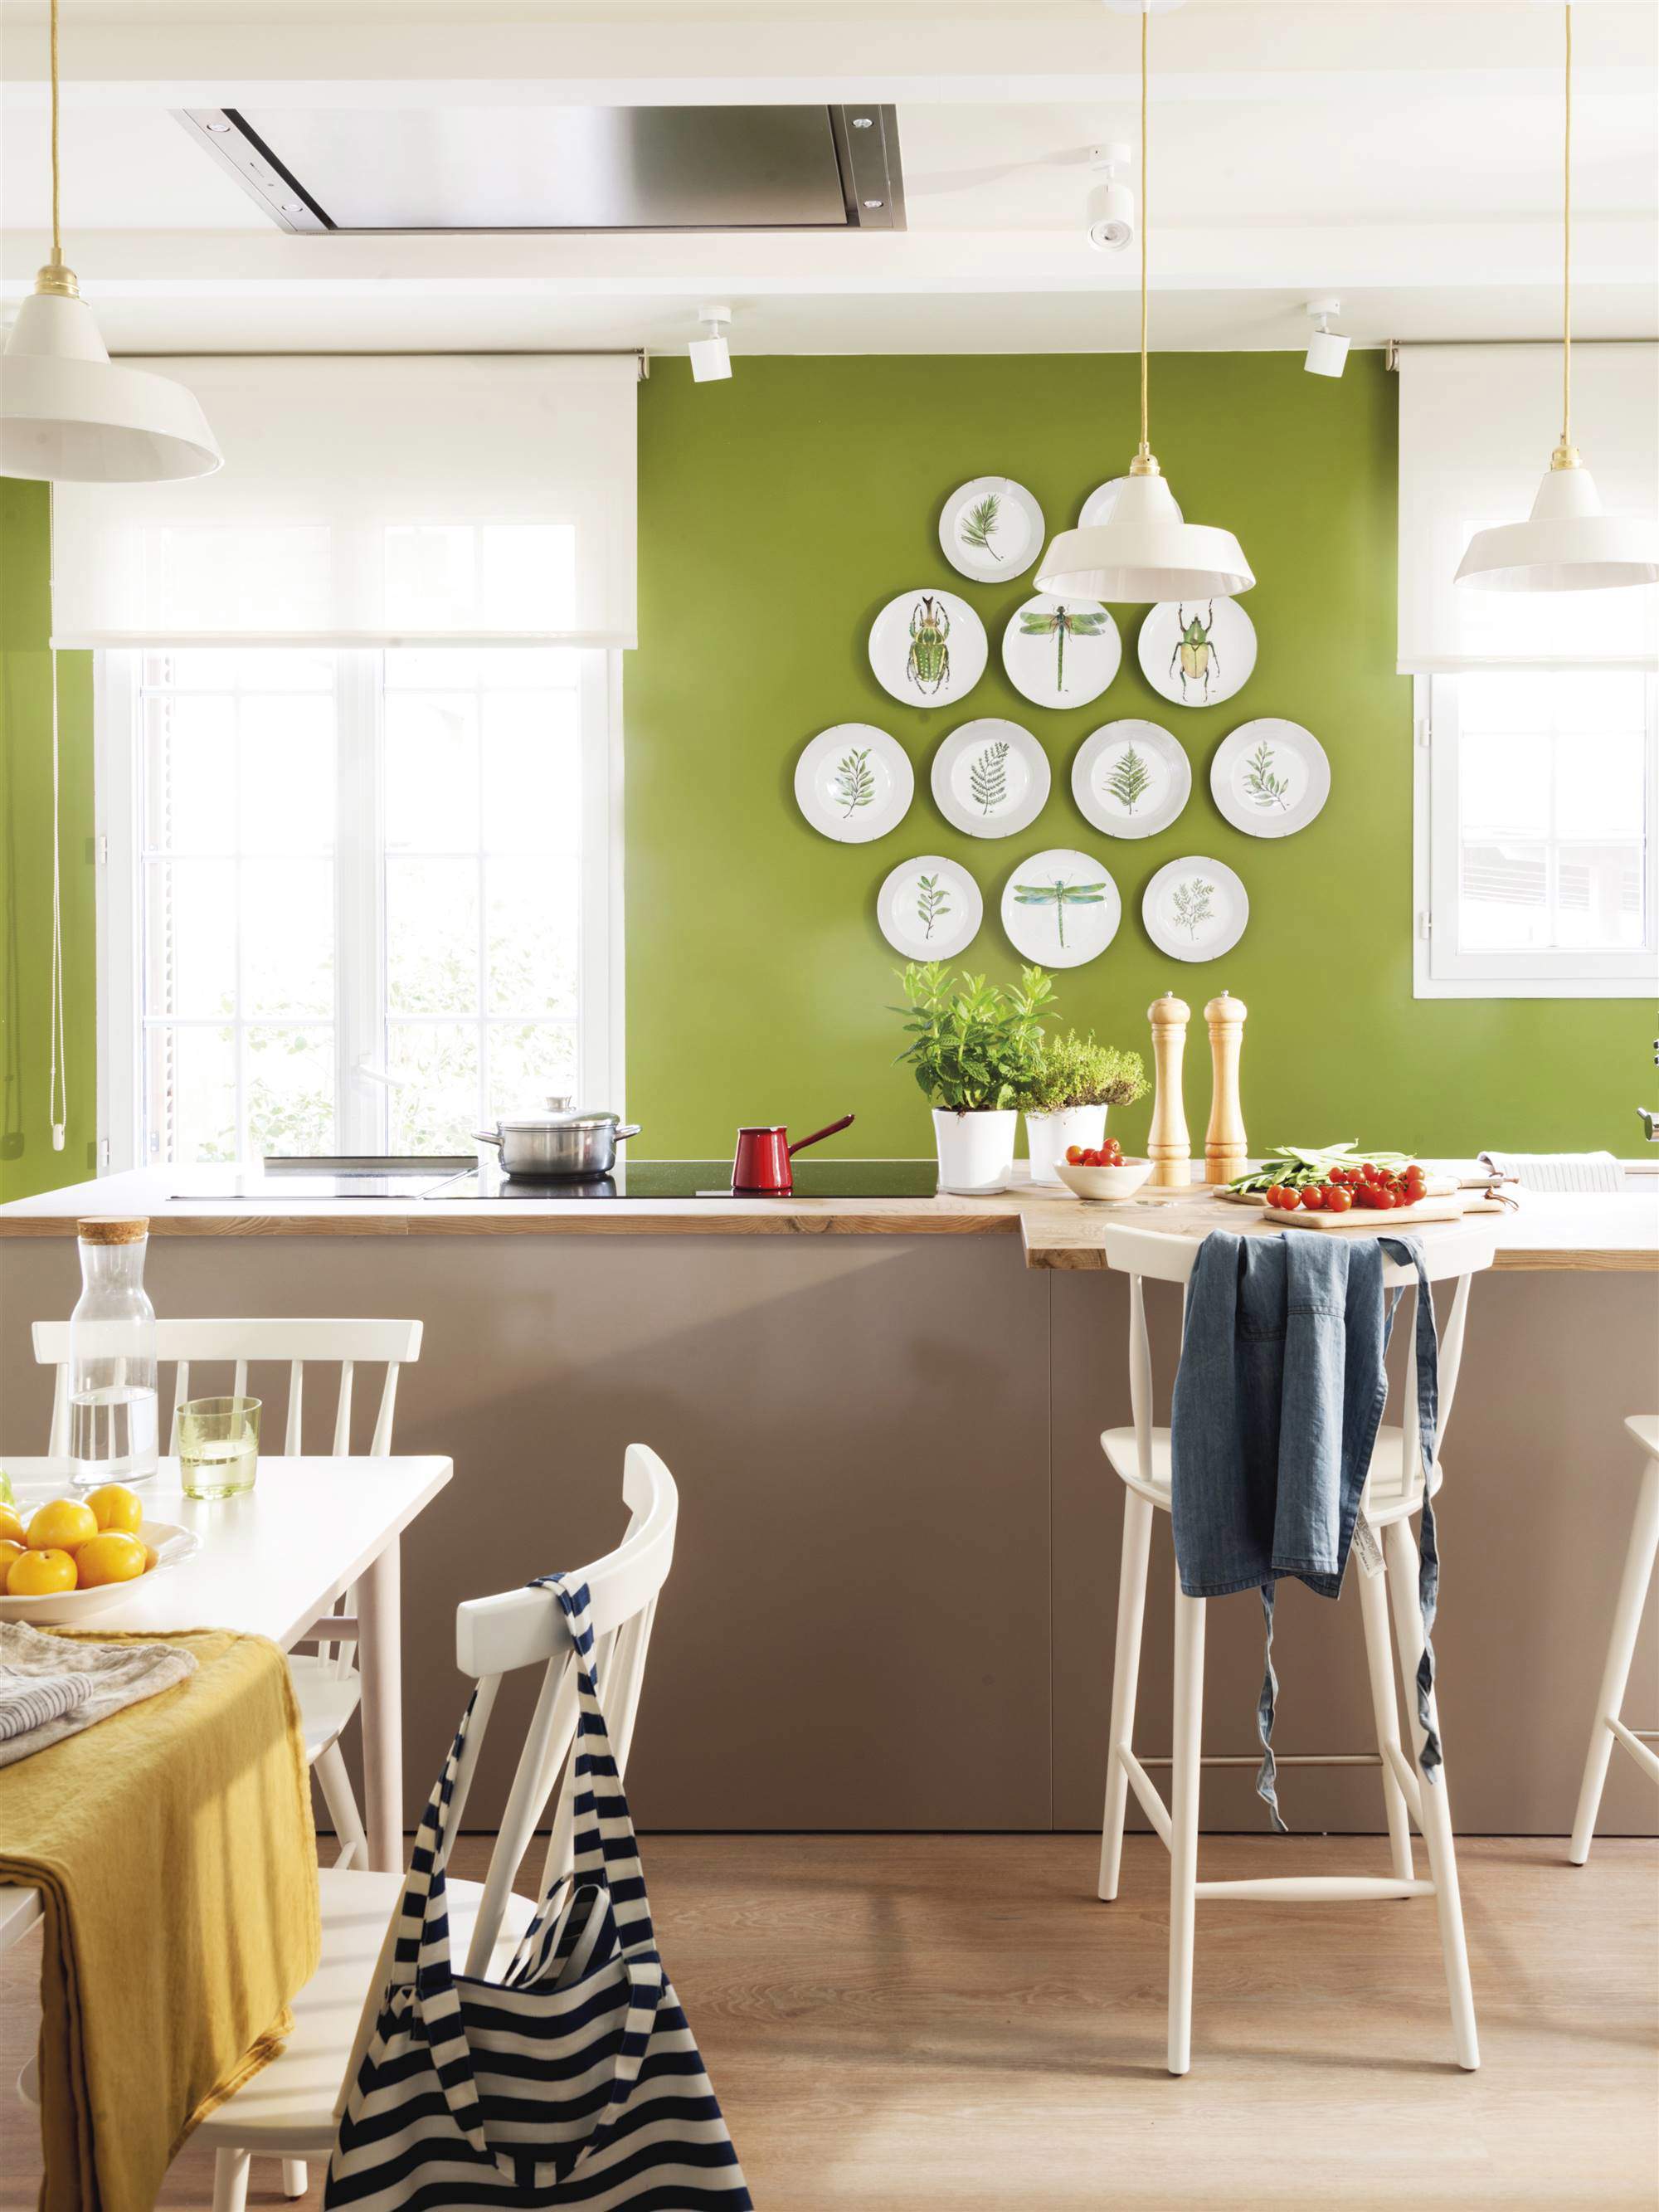 Cocina pintada en verde con isla y platos decorando la pared